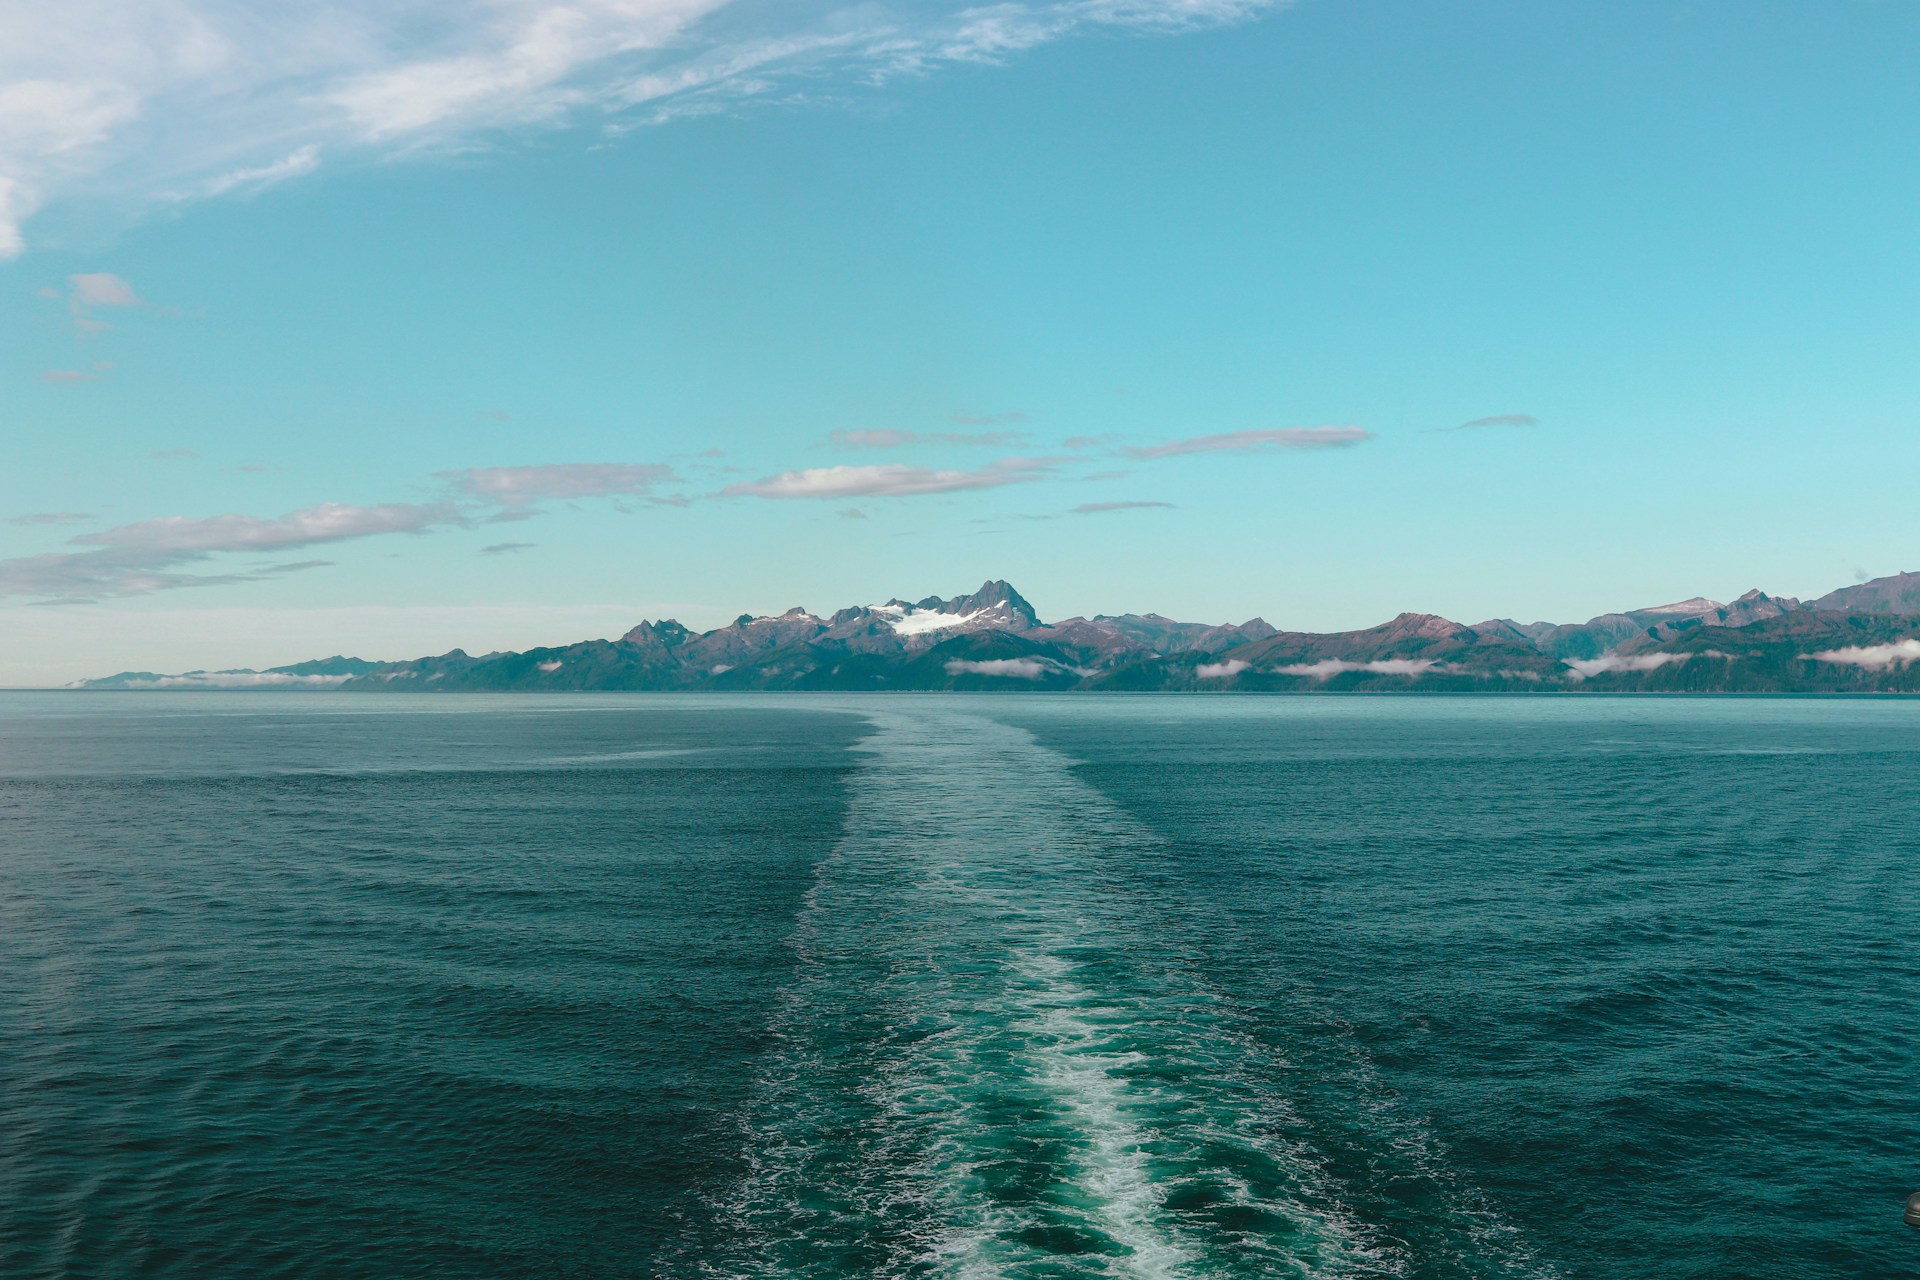 A vessel's wake in Alaskan waters